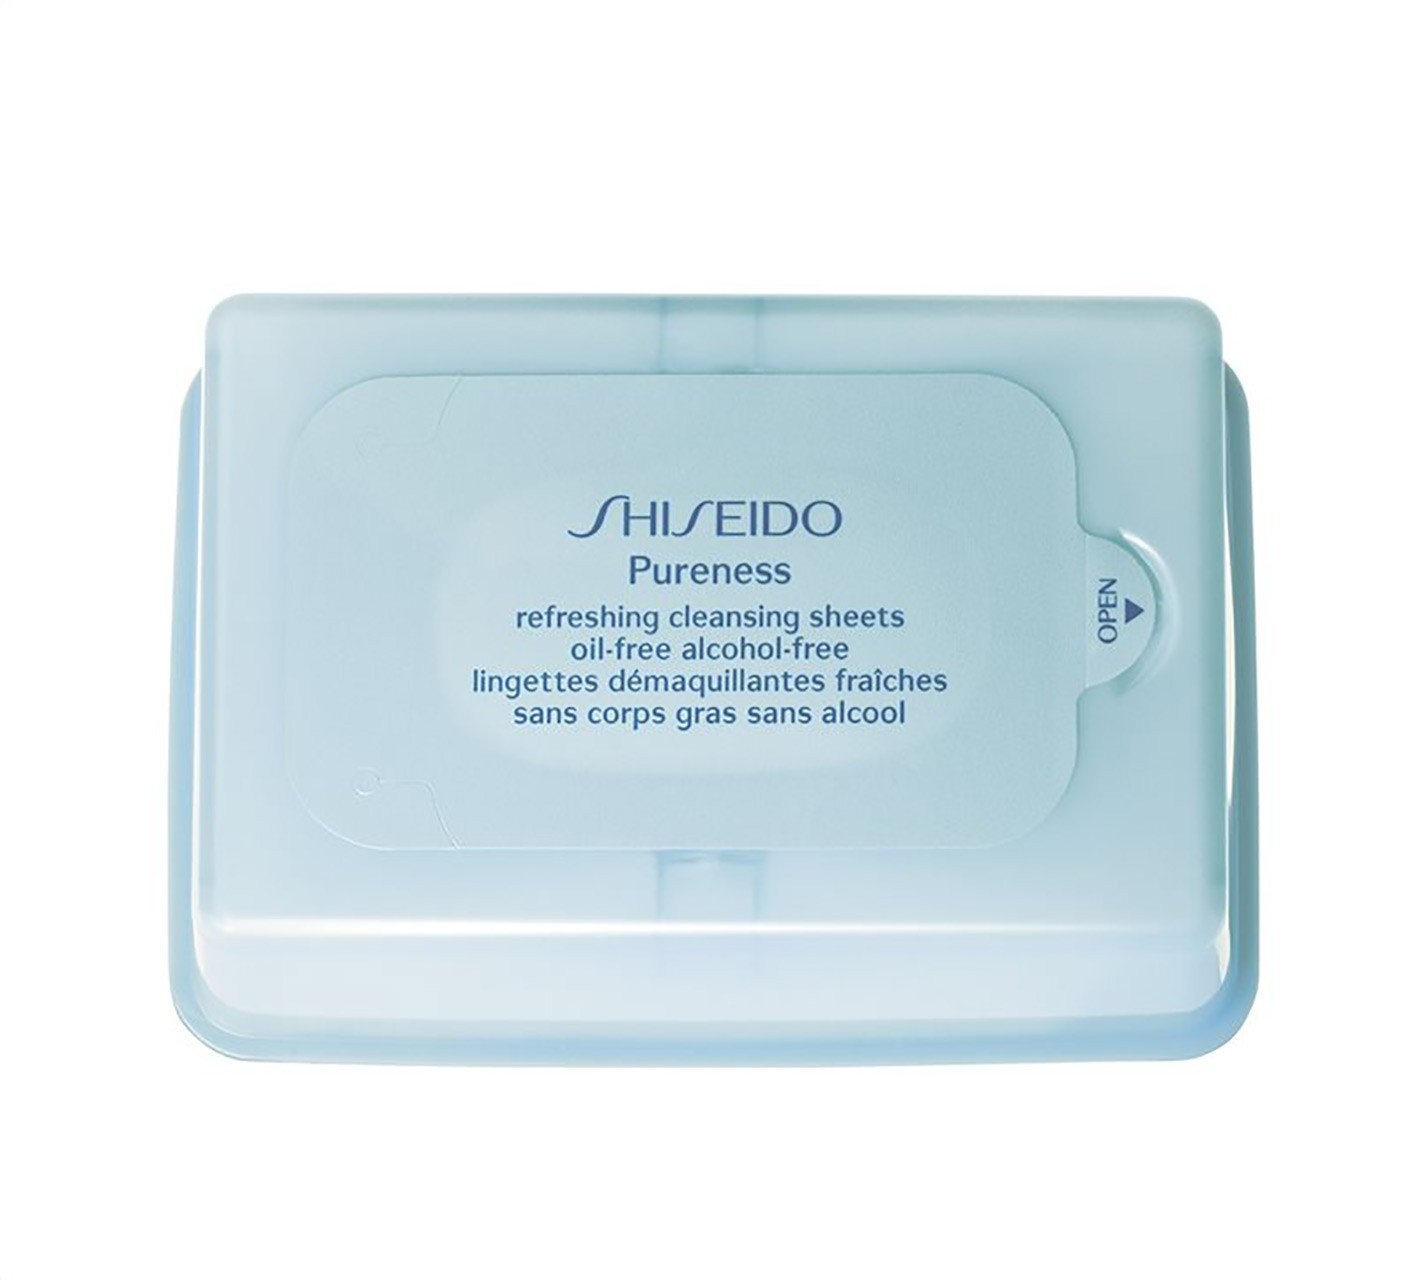 shiseido-pureness-refreshing.jpg